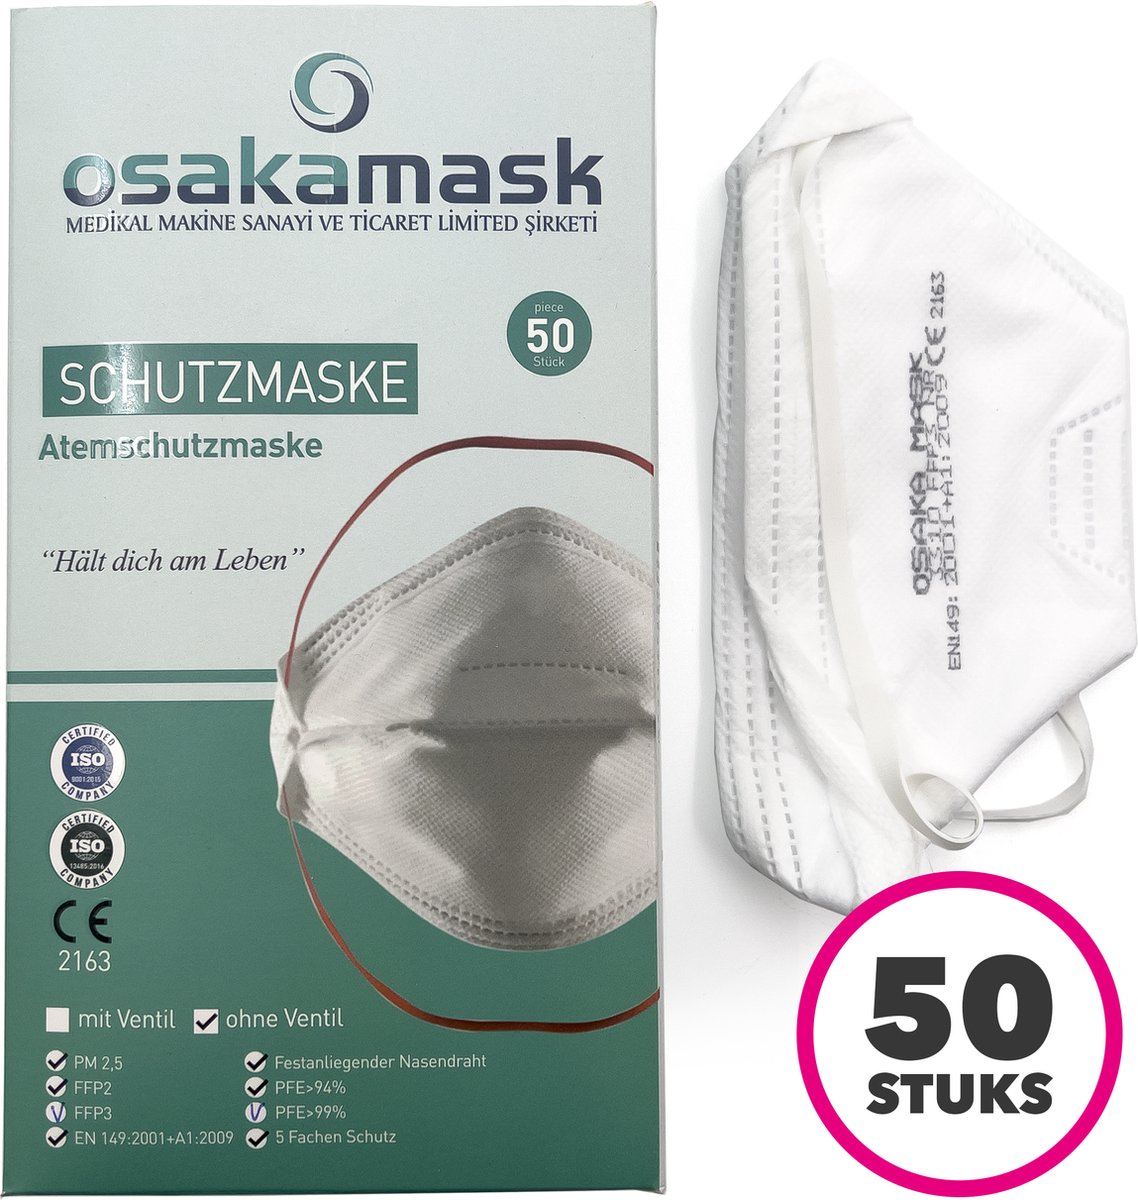 FFP3 mondmasker - Wegwerp mondkapjes - Officieel gecertificeerd - Medische mondkapjes - Chirurgische mondmaskers - Stoffen mondkapjes - Filter mondmaskers - 50 Stuks